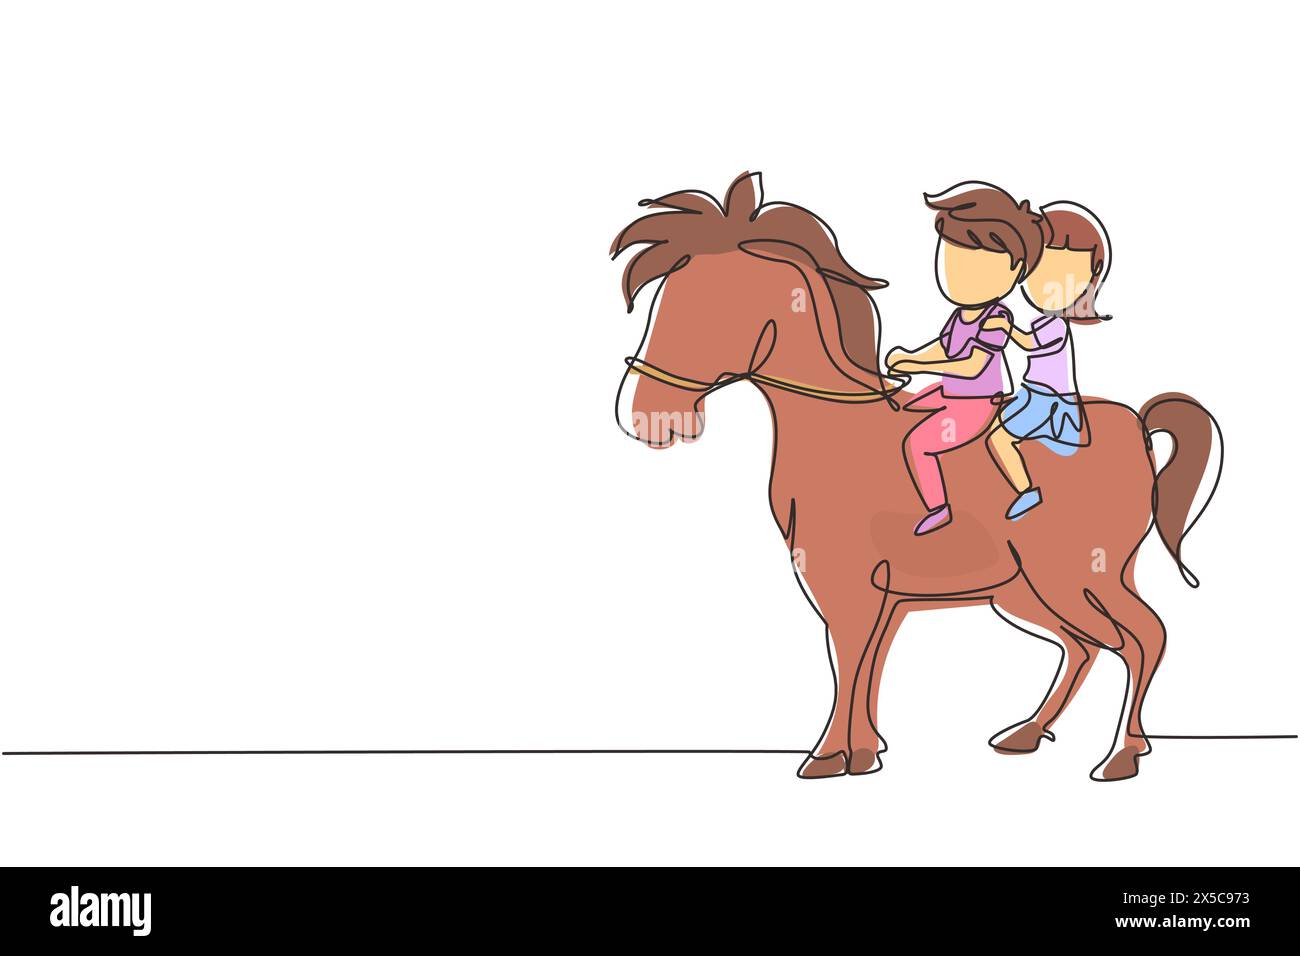 Eine durchgehende Linie zeichnet glückliche süße Jungen und Mädchen, die gemeinsam auf einem Pferd reiten. Kinder sitzen auf einem Pferd mit Sattel im Ranch Park. Kinder lernen Stock Vektor